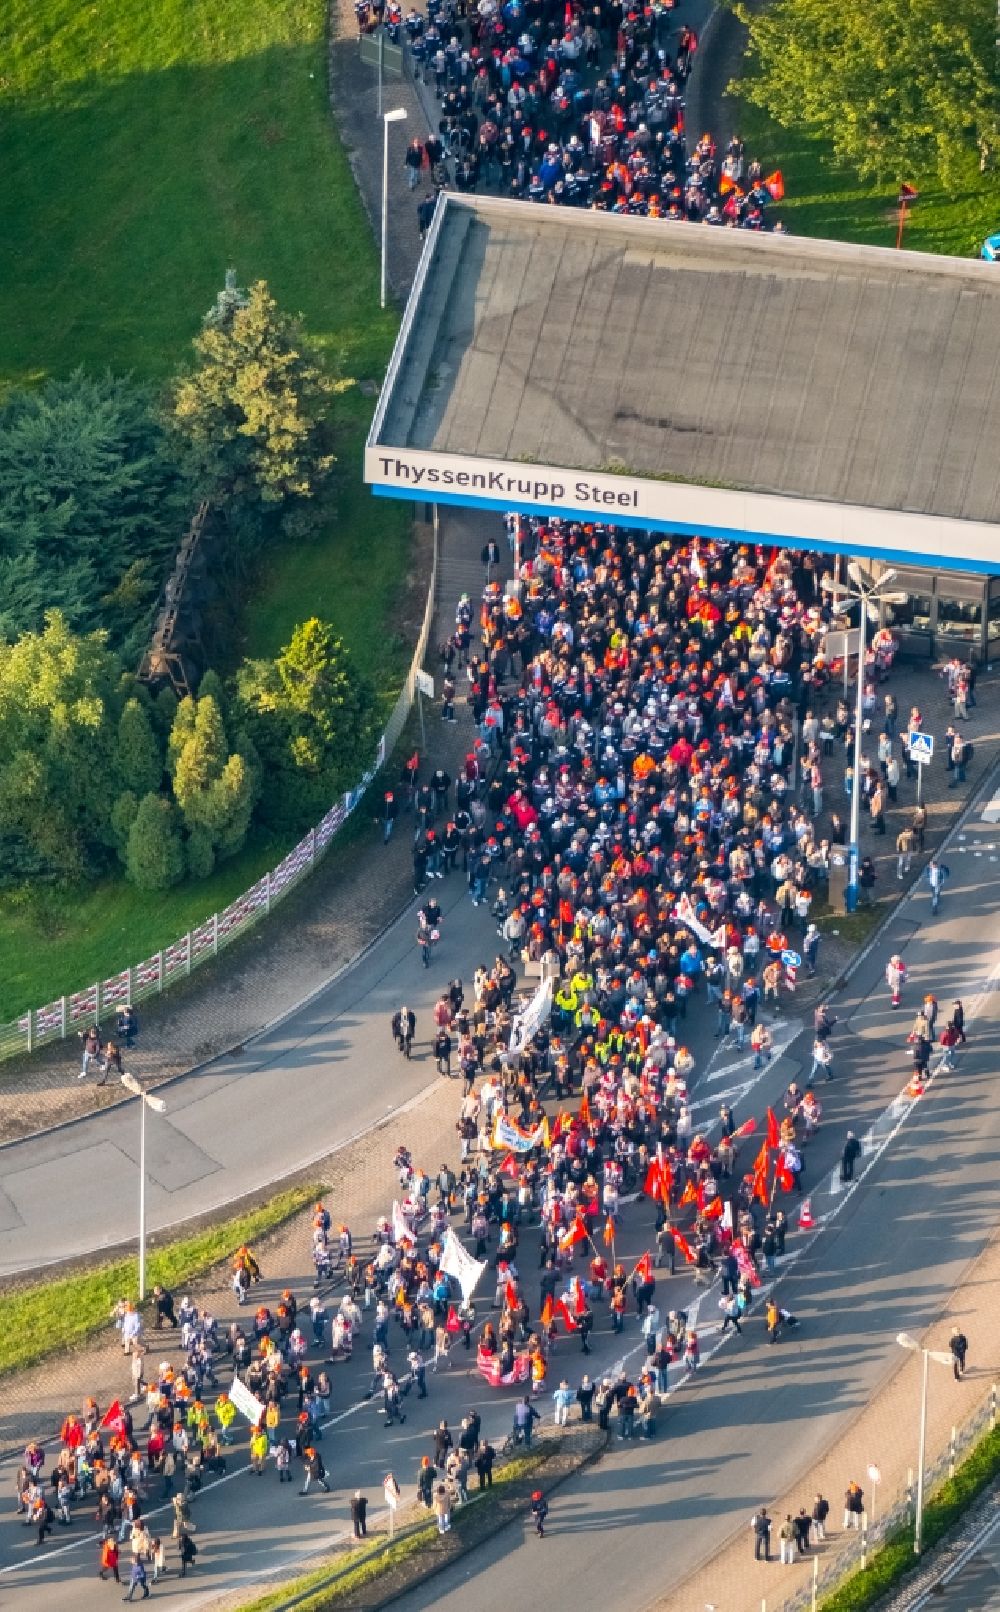 Luftbild Bochum - Streik gegen Fusion auf dem Werksgelände der thyssenkrupp Steel Europe AG in Bochum im Bundesland Nordrhein-Westfalen, Deutschland